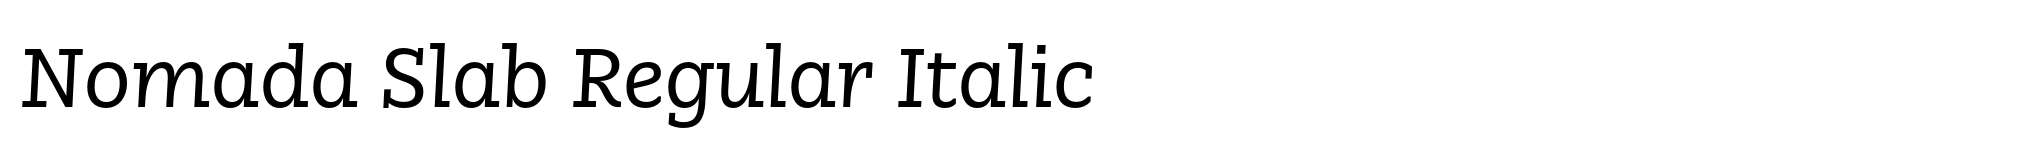 Nomada Slab Regular Italic image